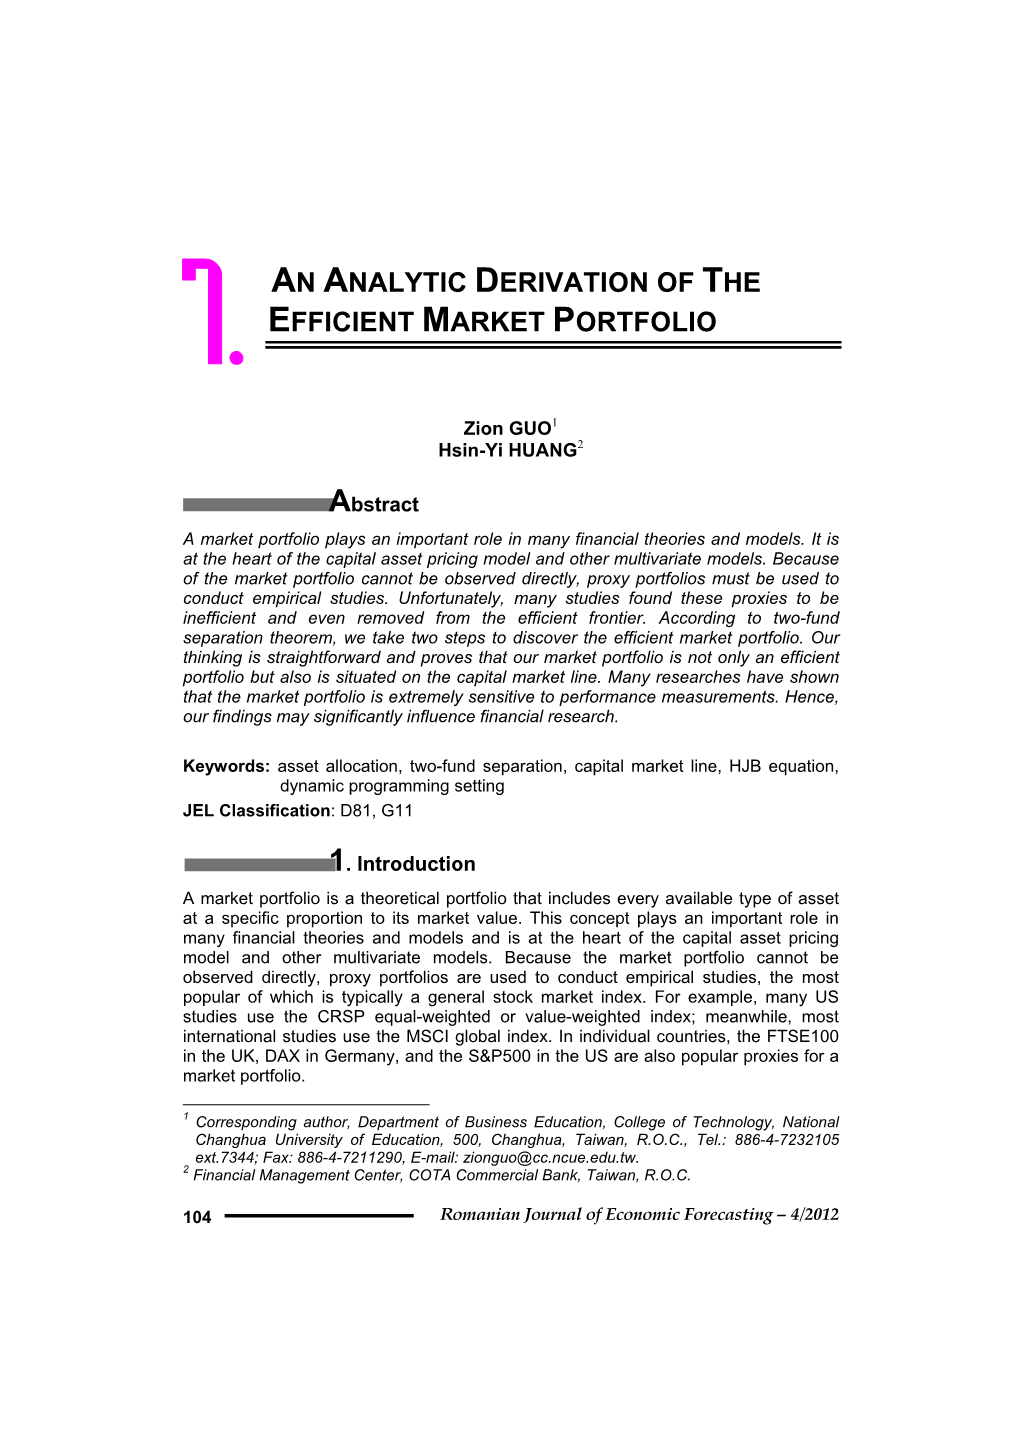 An Analytic Derivation of the Efficient Market Portfolio 7